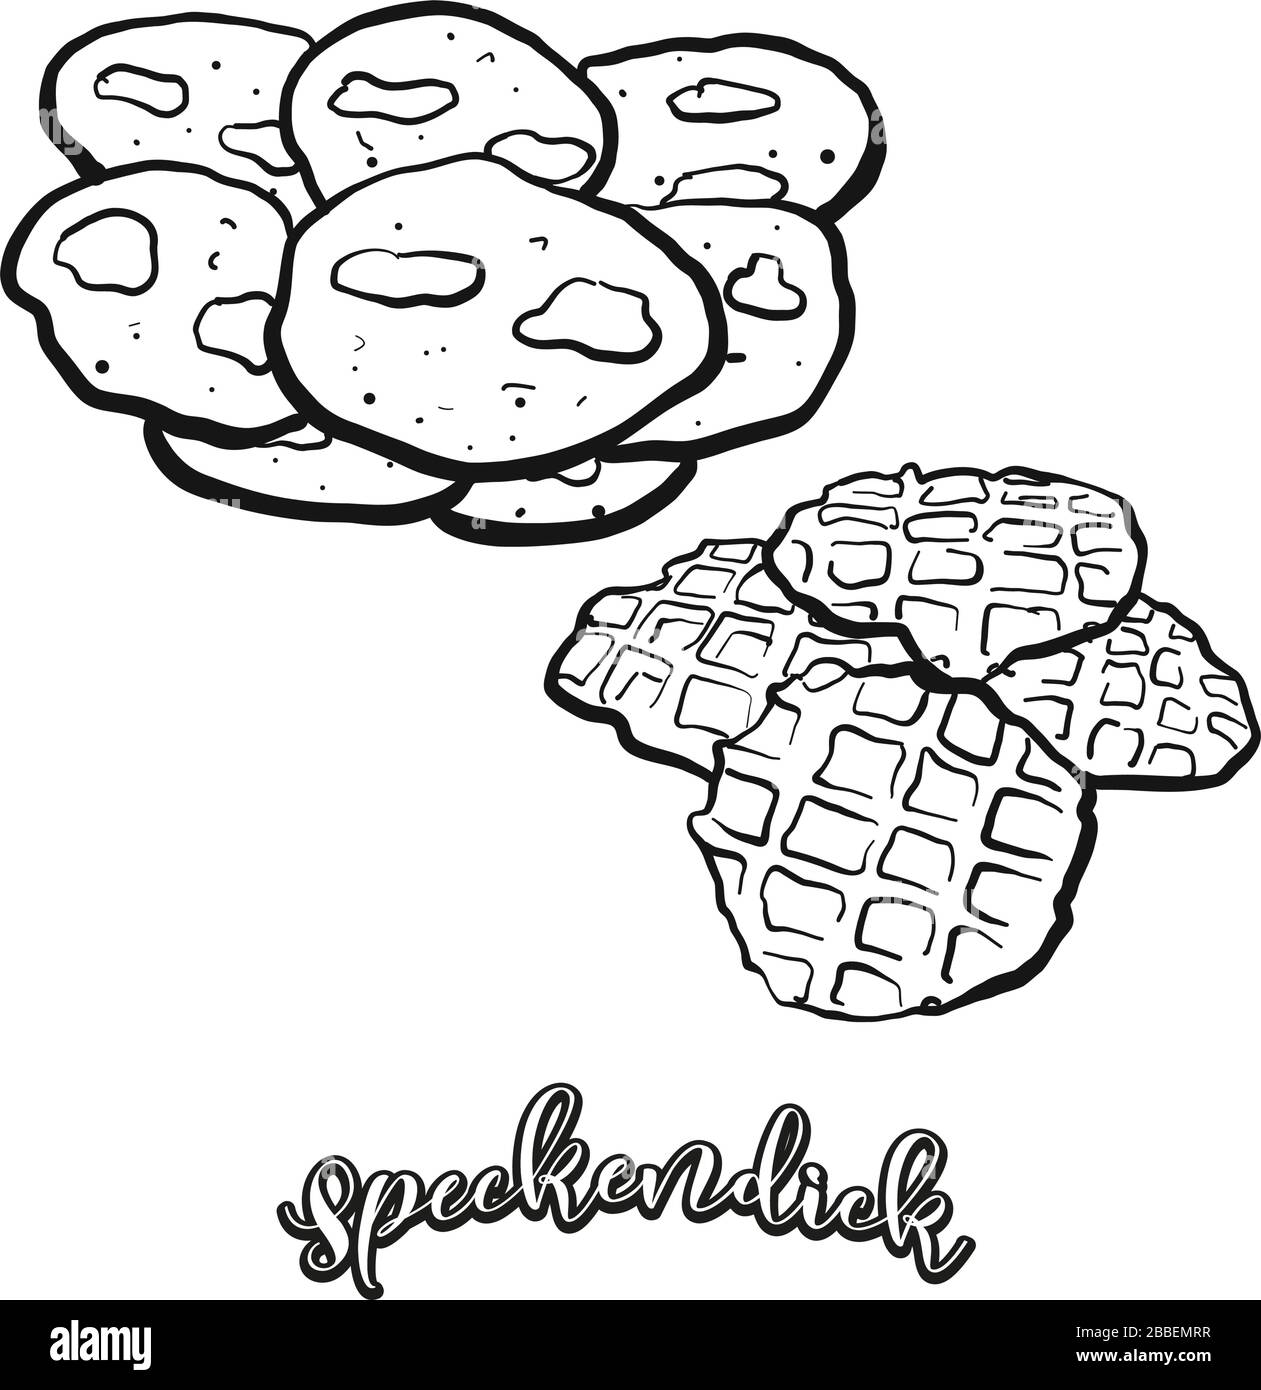 Speckendick Essenskizze auf Weiß abgegrenzt. Vektorzeichnung von Pancake, in Deutschland meist bekannt, in Ostfriesland. Lebensmittel-Illustration-Serie. Stock Vektor